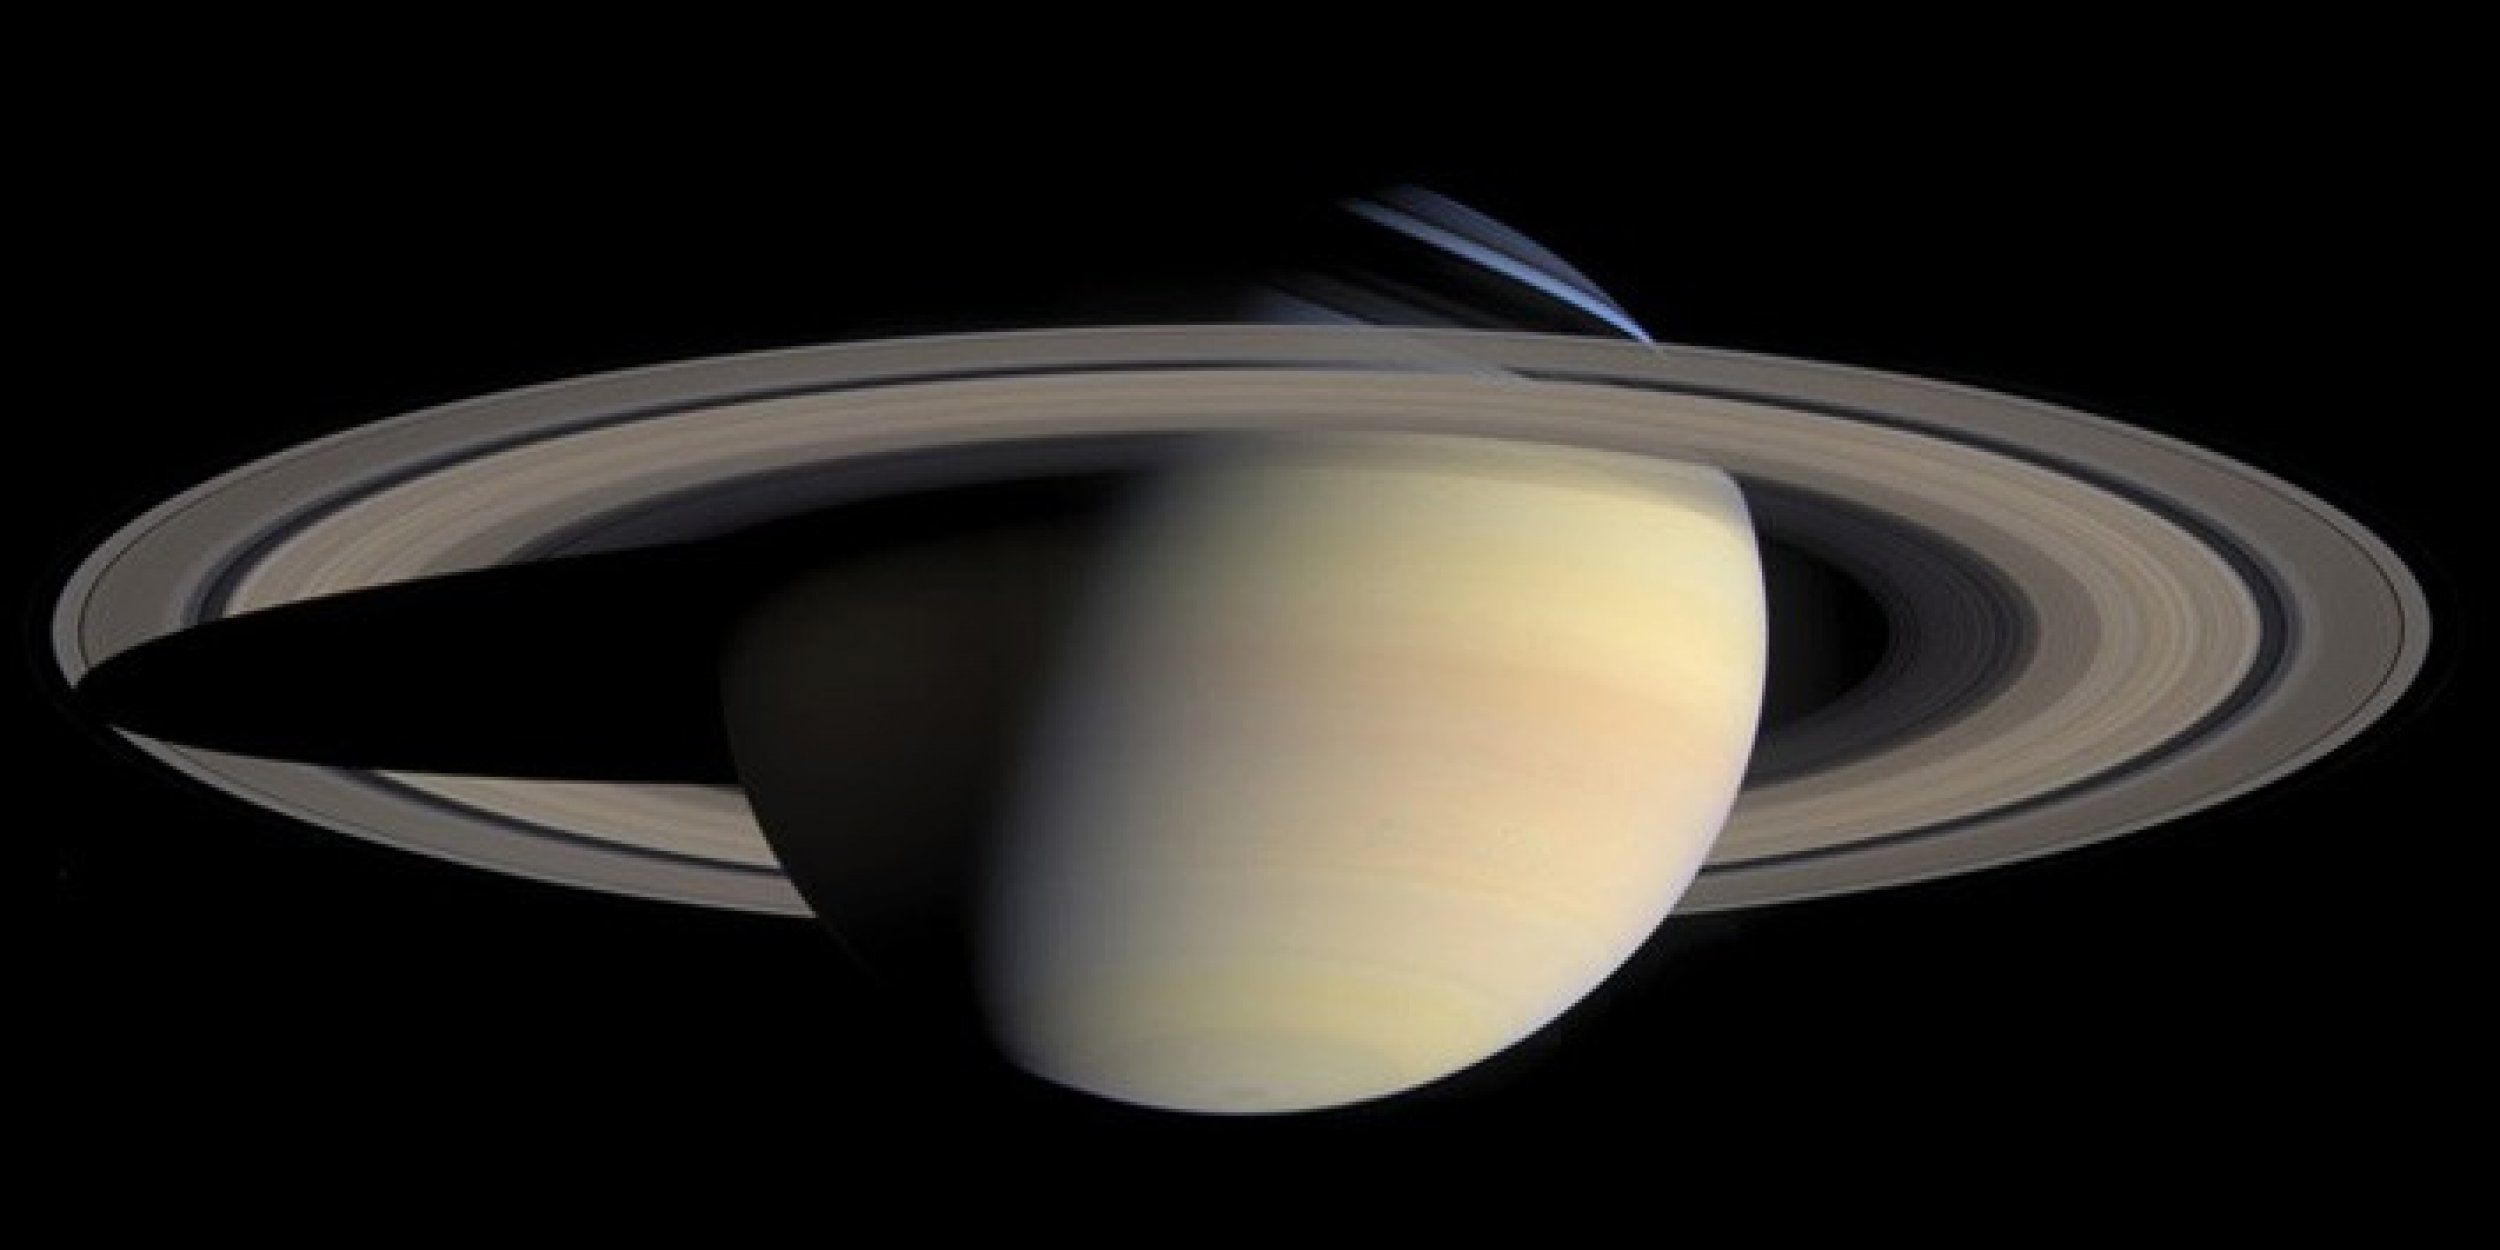 April 3, 2011 - Saturn